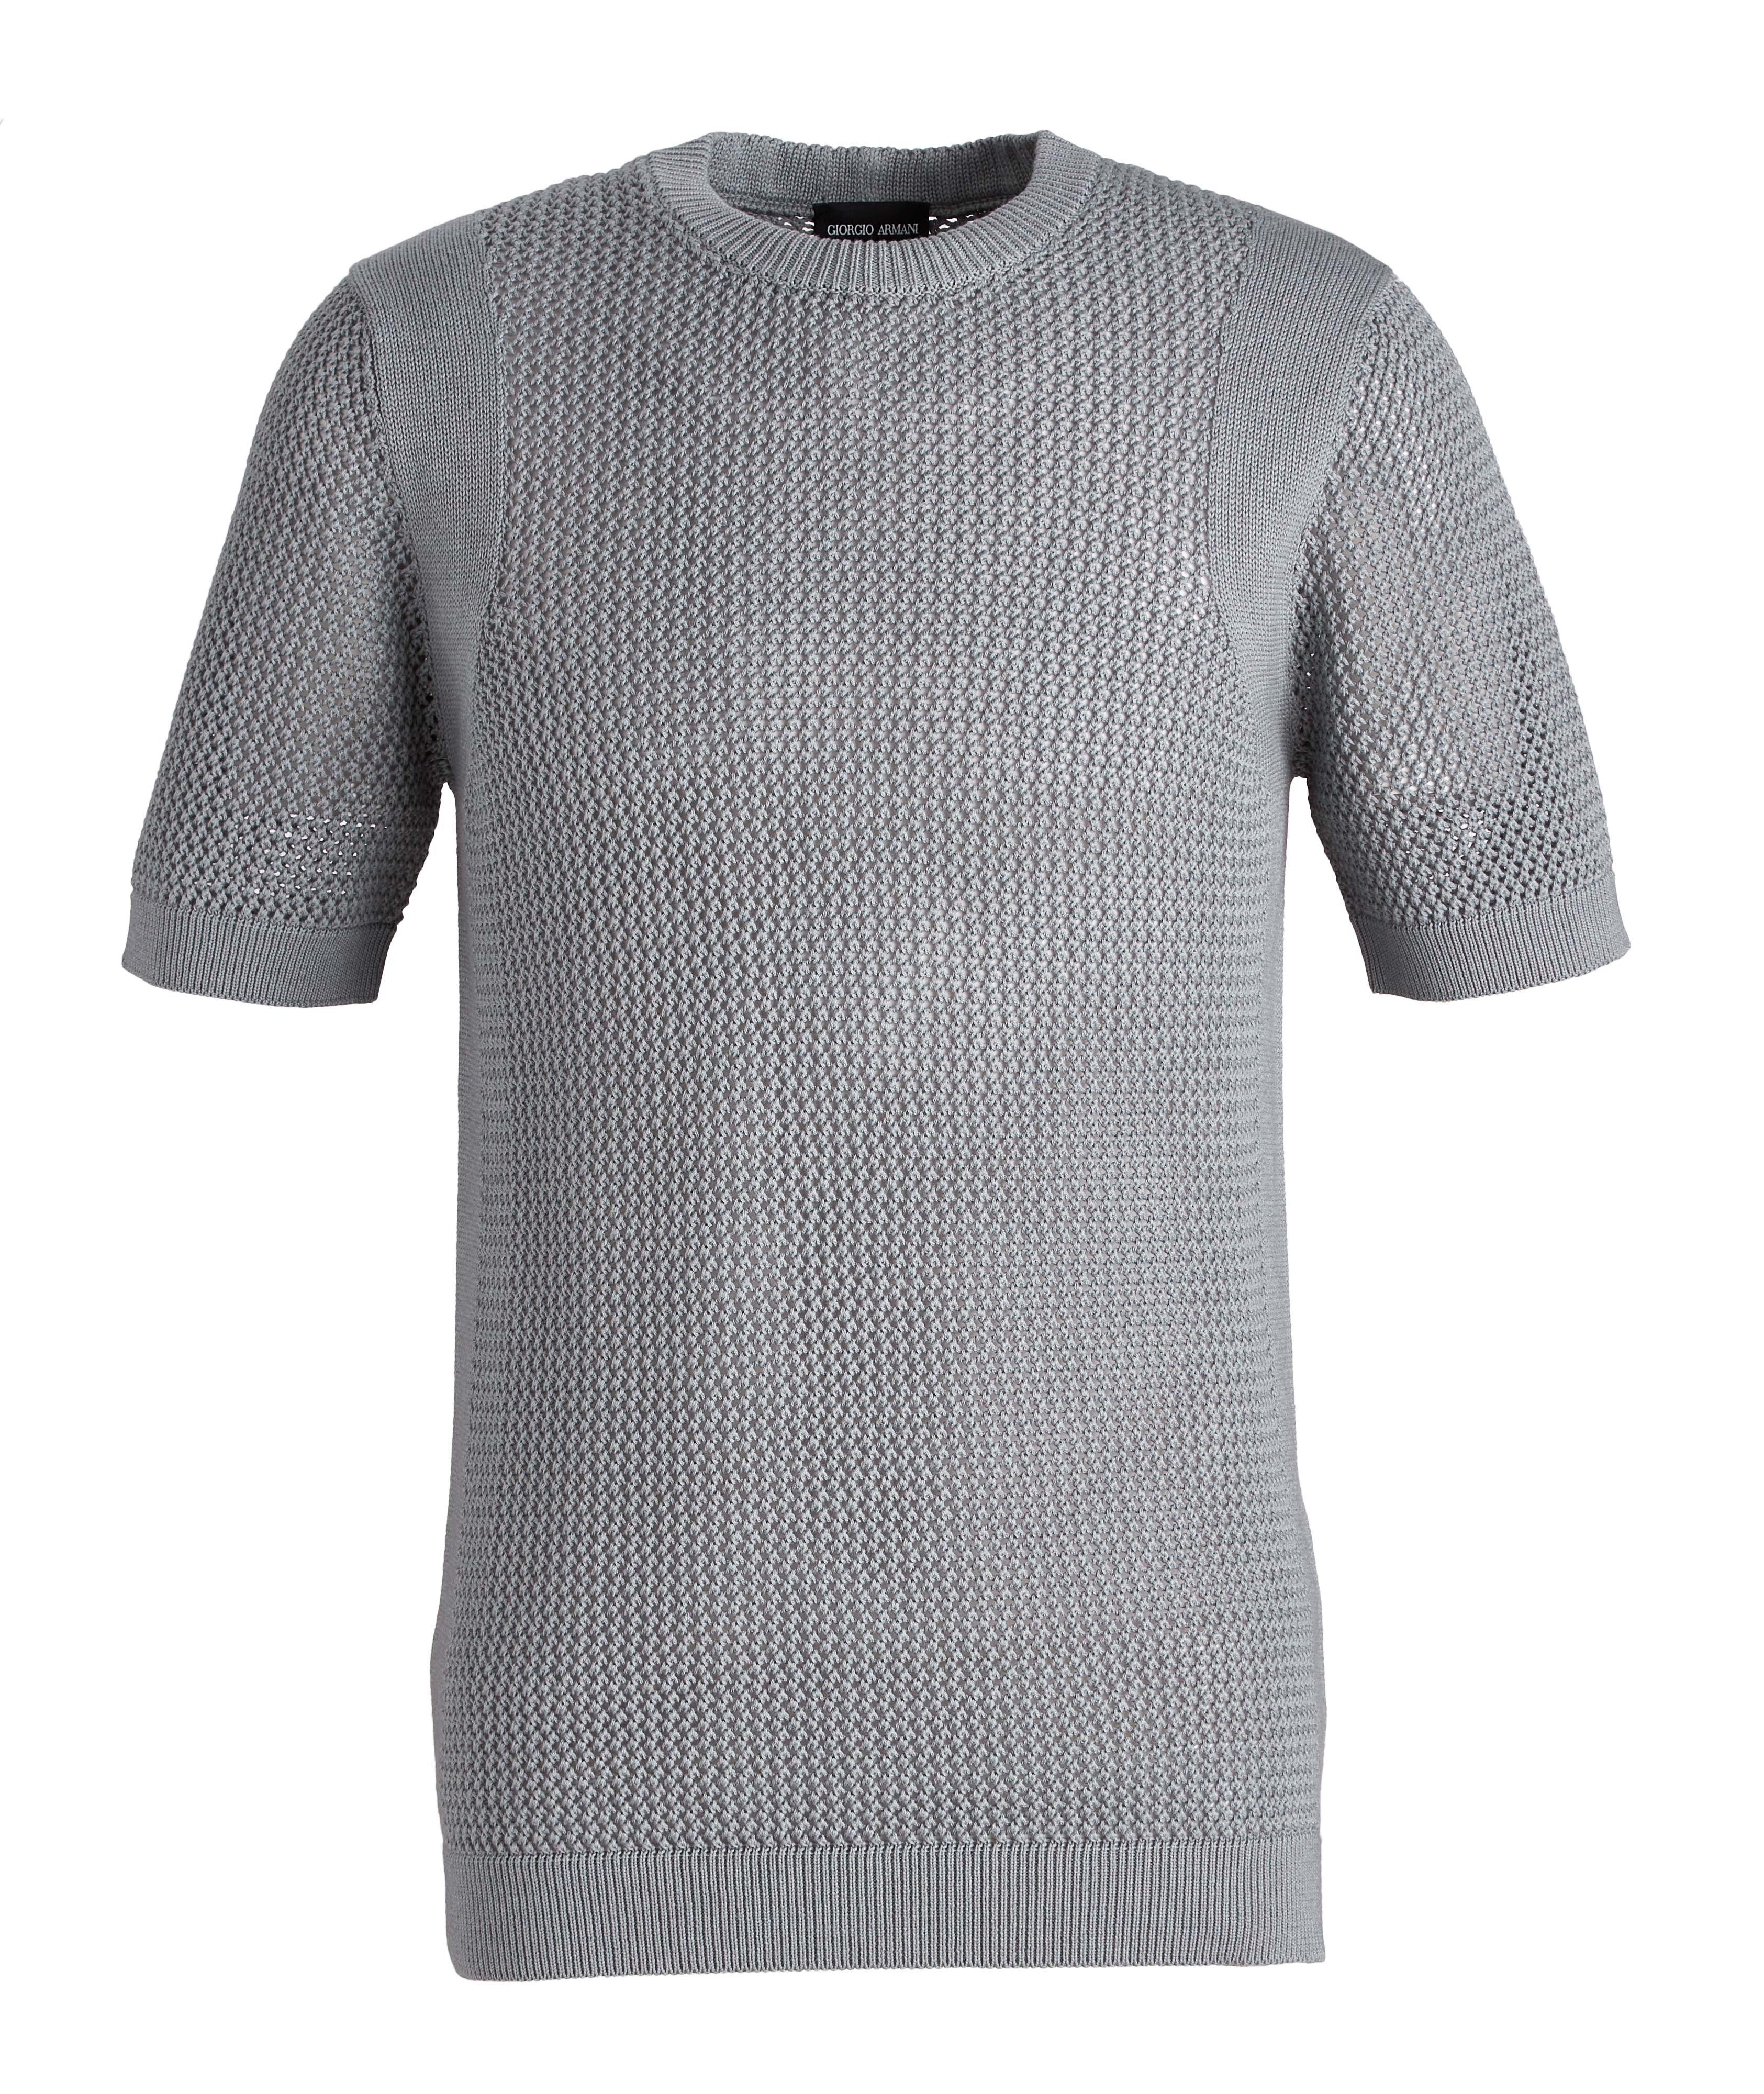 Braided Knit Wool-Cotton T-Shirt image 0